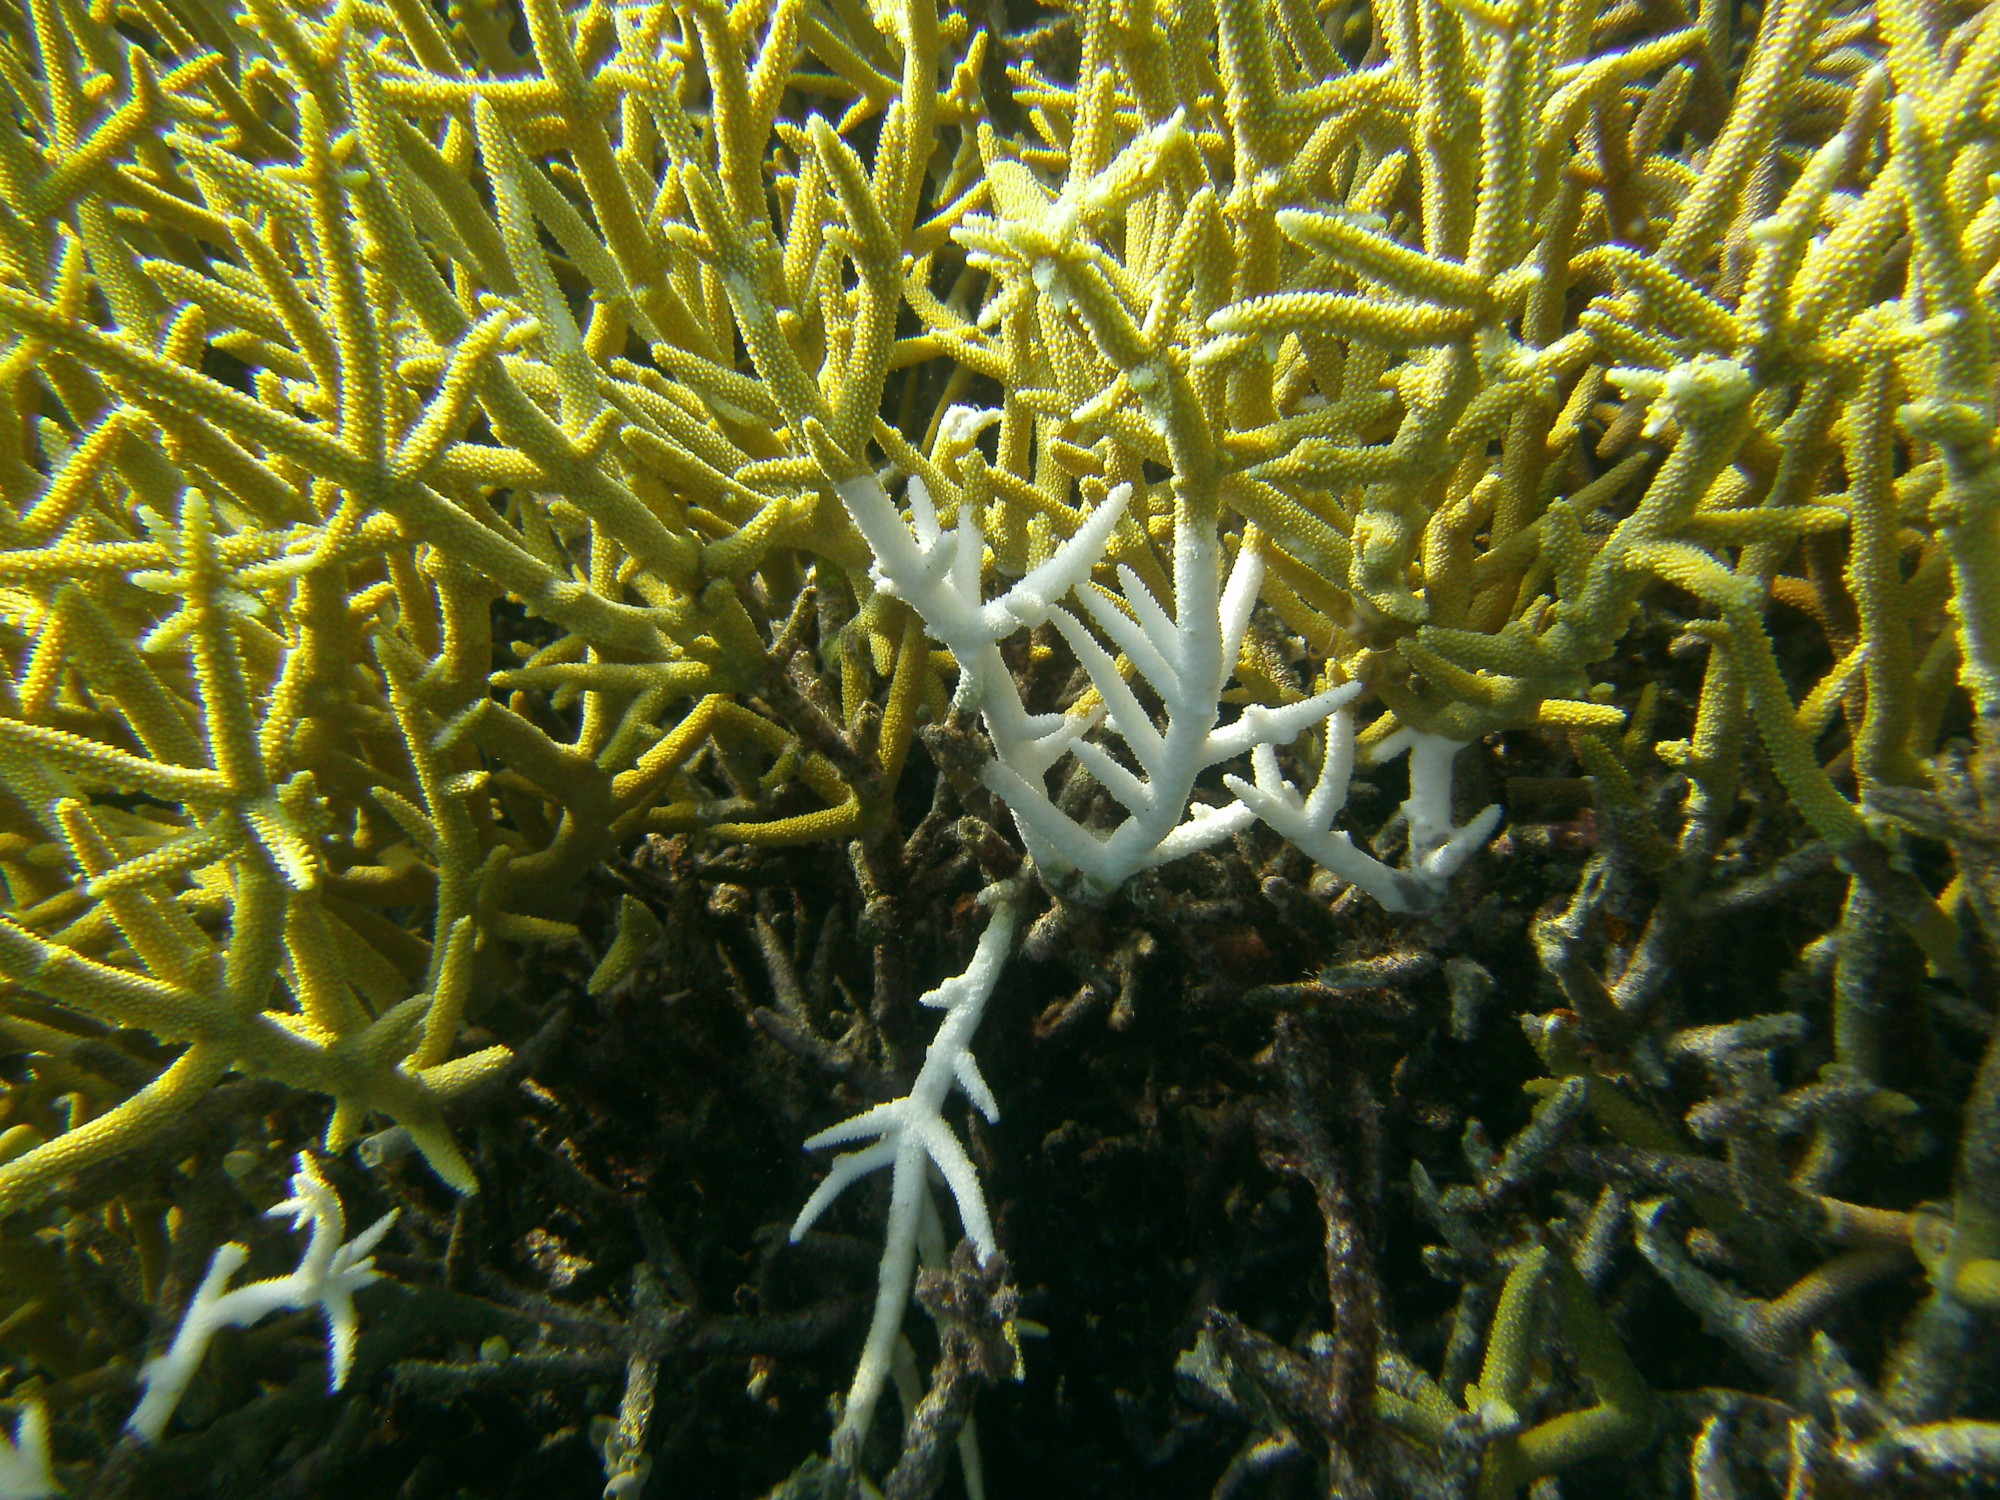 Die Geweihkoralle ist anfällig für die sogenannte Korallenbleiche, die durch die Erwärmung der Meere ausgelöst wird. Folge ist das Absterben der Korallenstöcke. (Bild: Wolfgang Kießling)